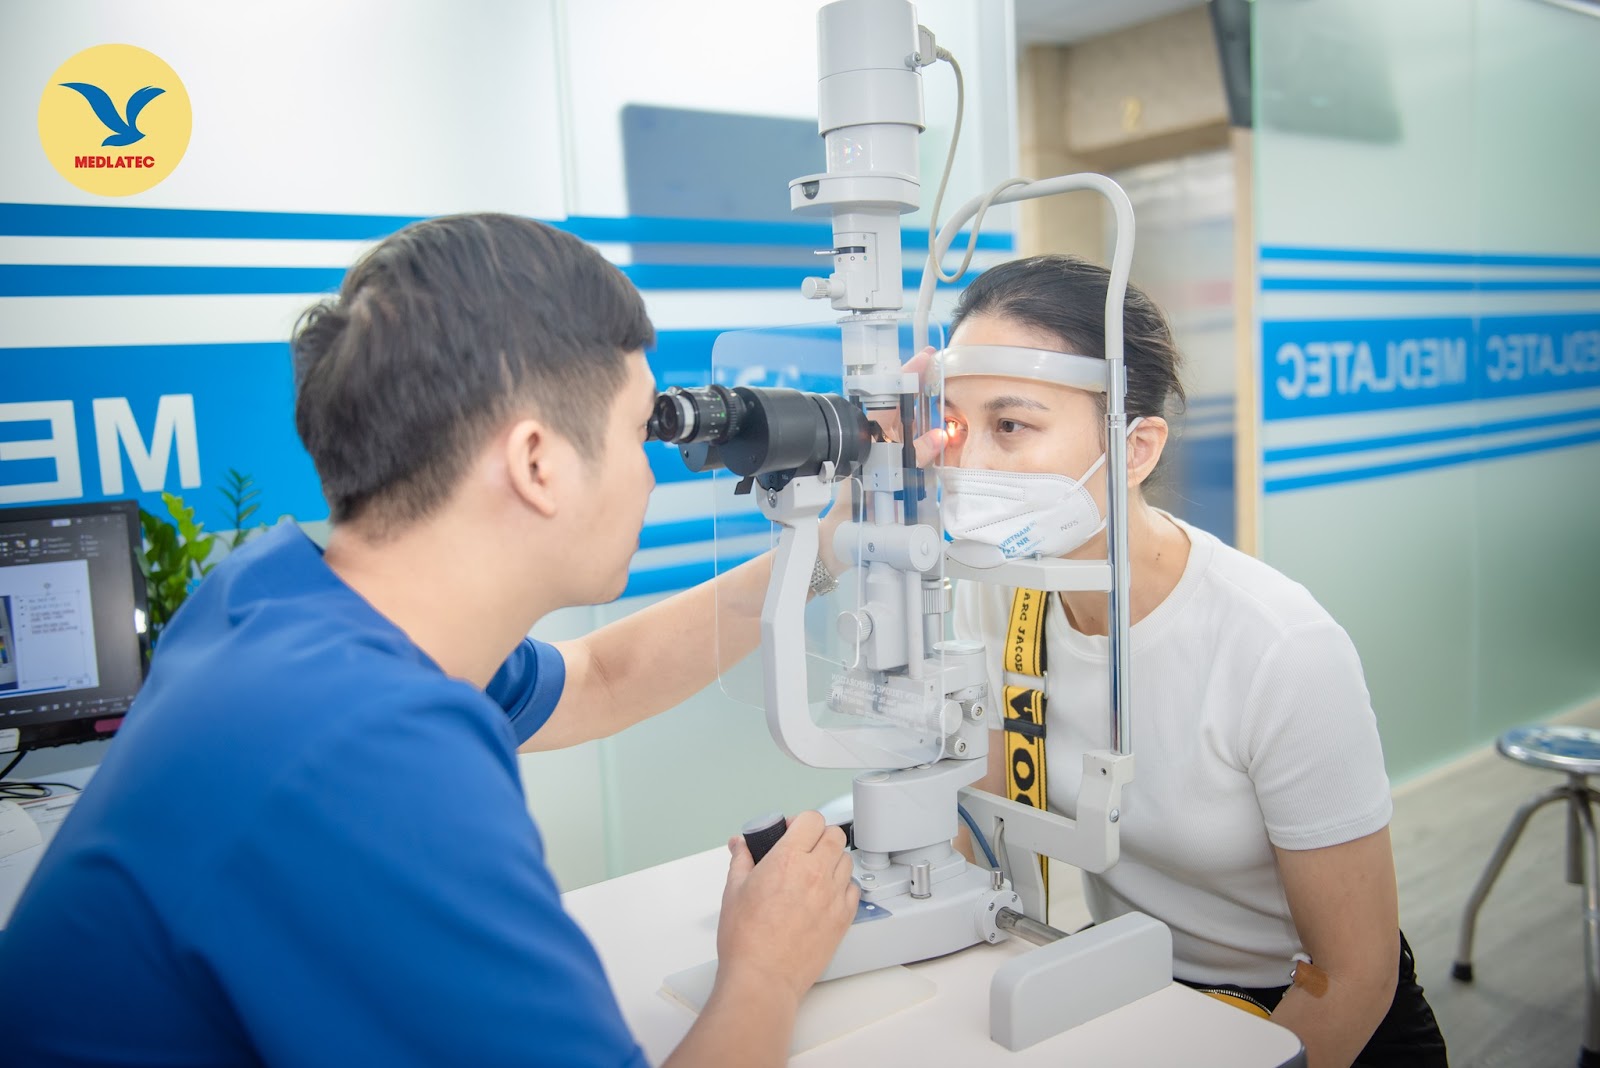 Kiểm tra thị lực là một trong những bước cần thiết để chẩn đoán bệnh thoái hóa điểm vàng